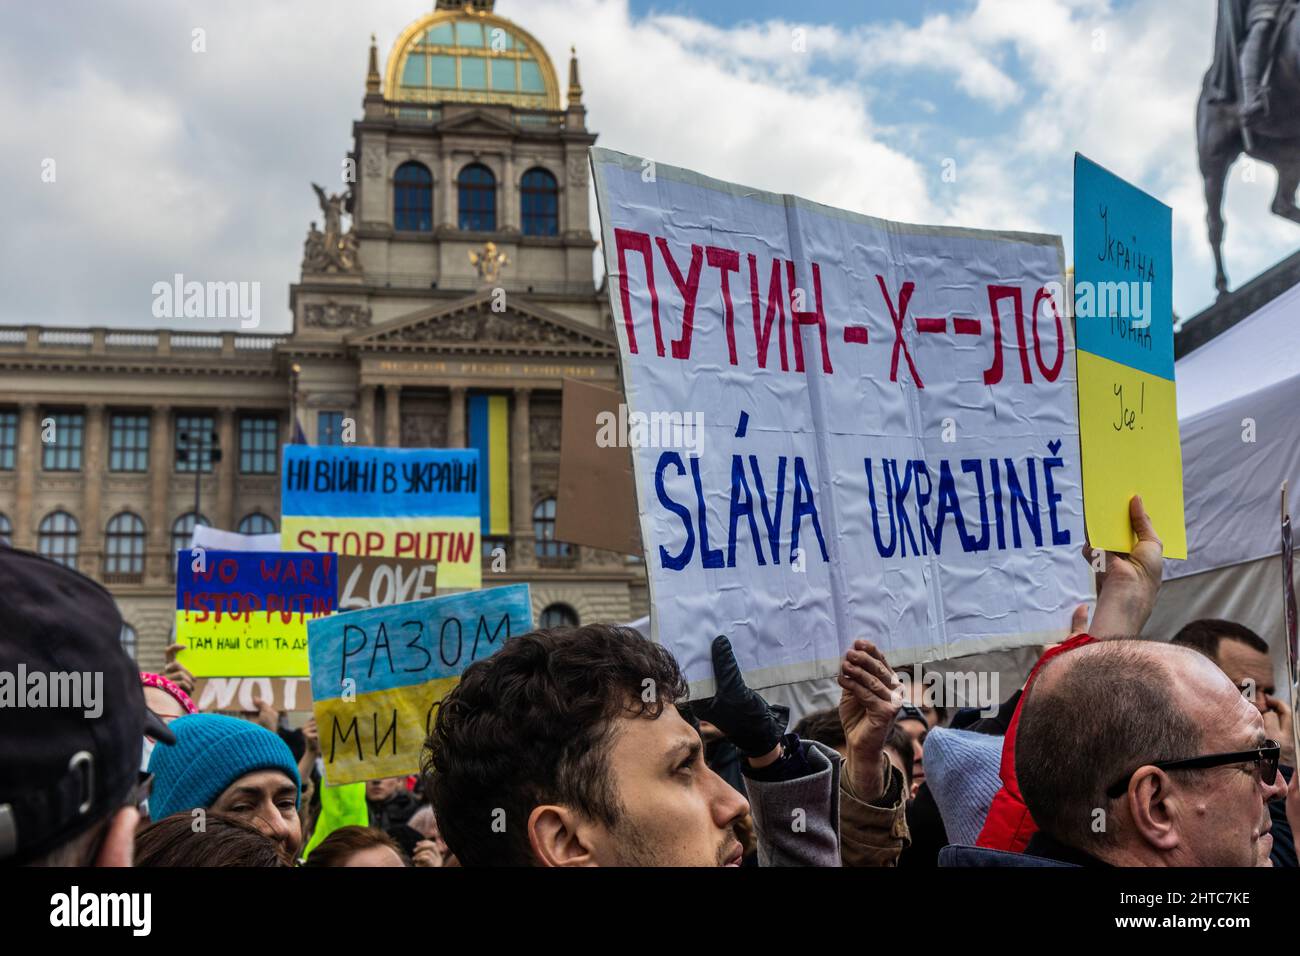 PRAGA, REPUBBLICA CECA - 27 FEBBRAIO 2022: Protesta contro l'invasione russa dell'Ucraina in Piazza Venceslao a Praga, Repubblica Ceca. Il poster dice Foto Stock